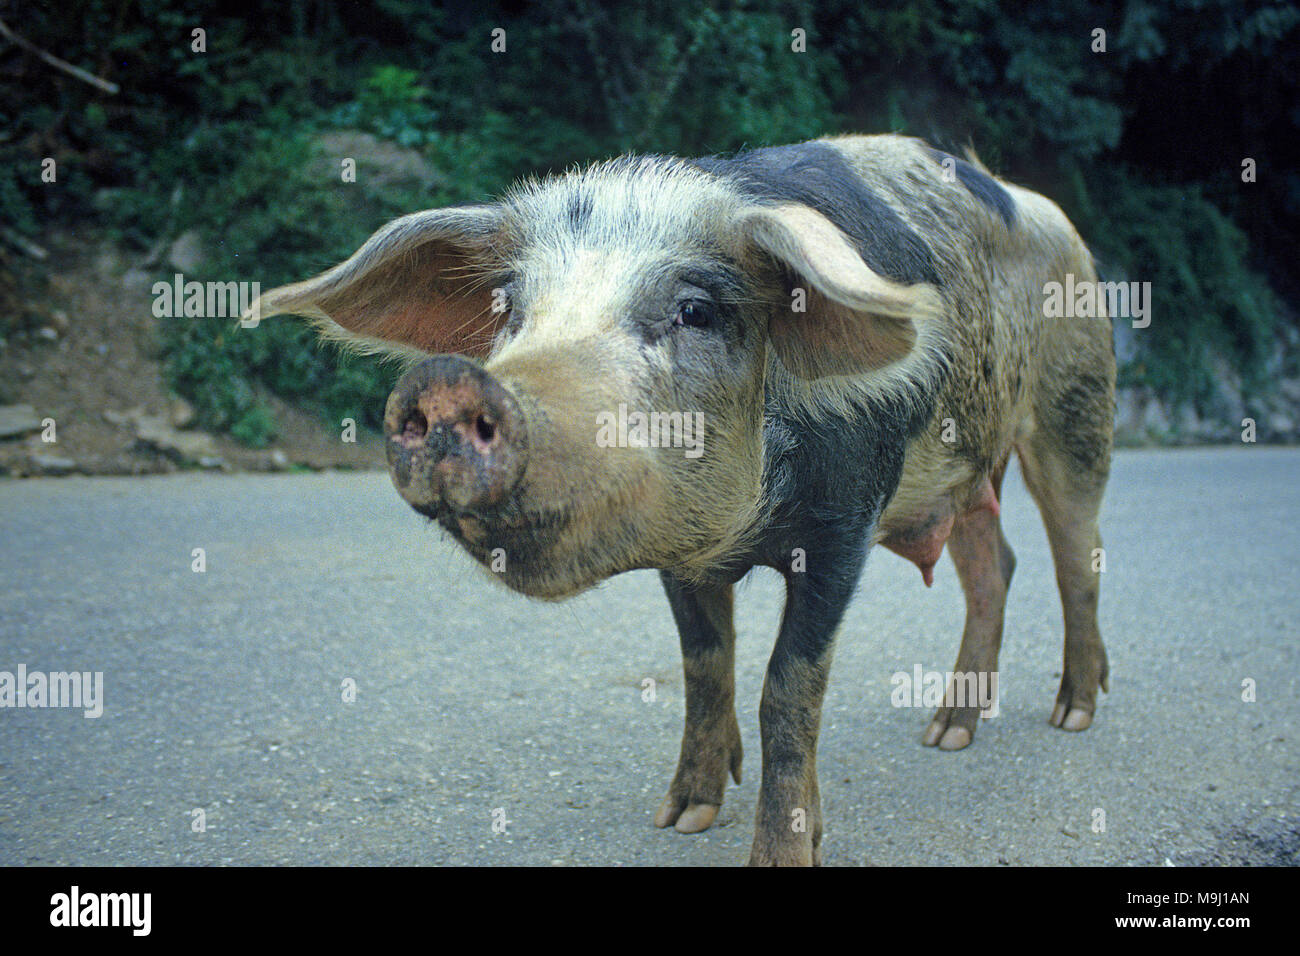 Inland frei lebenden Schwein auf der Straße, ernährt sich von Kastanien und Eicheln, schmackhaftes Fleisch, Korsika, Frankreich, Mittelmeer, Europa Stockfoto